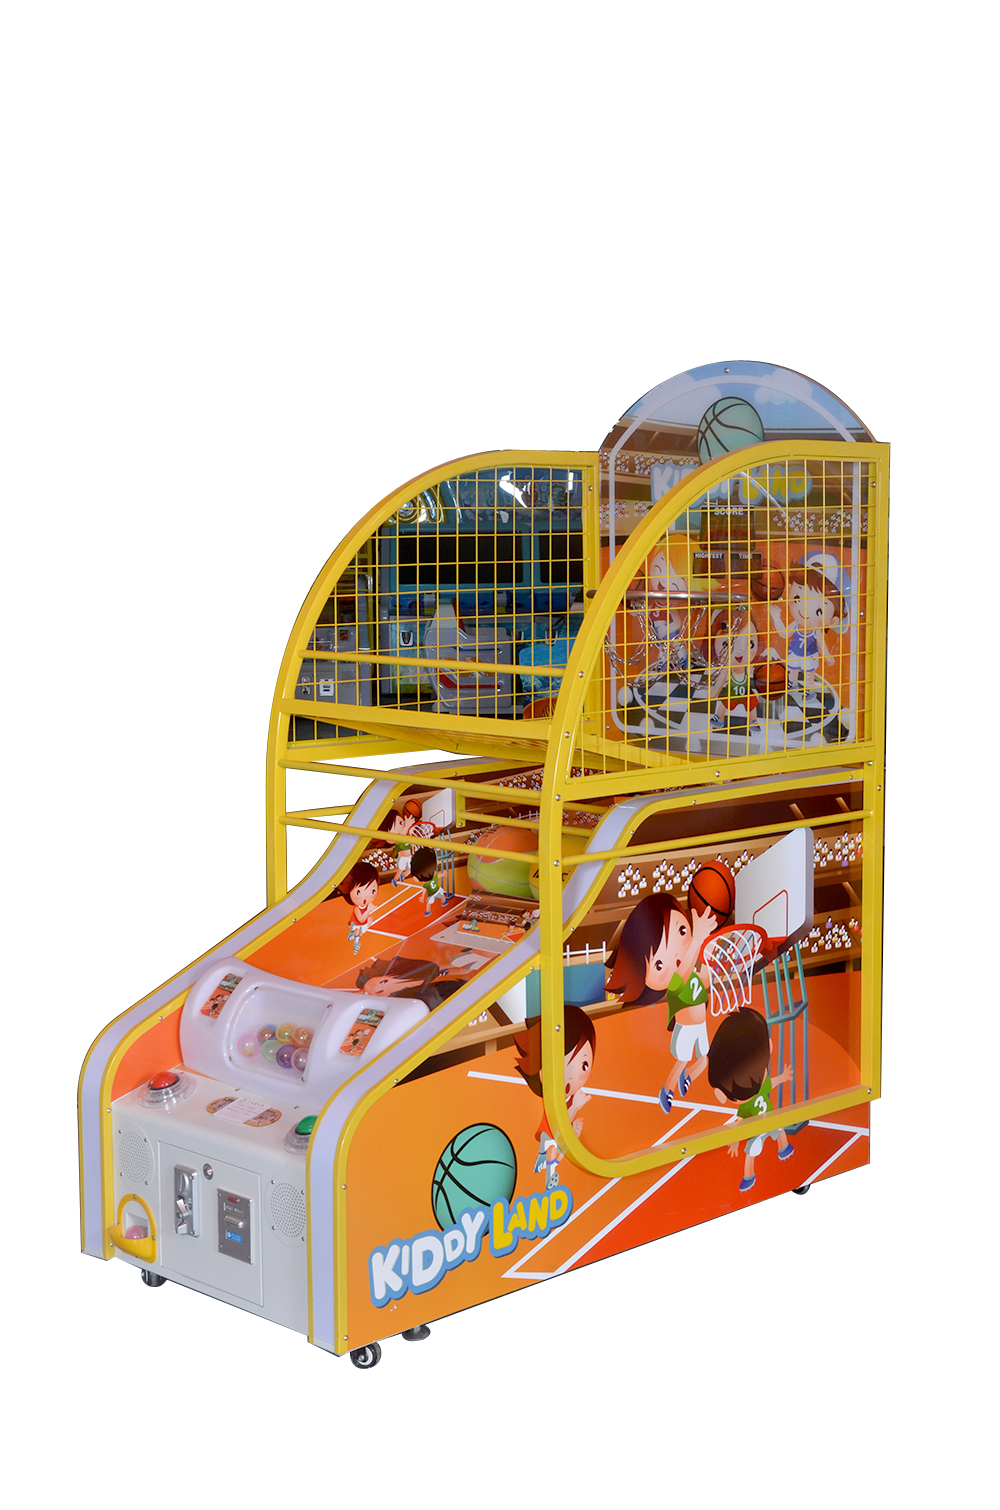 厂家直销篮球机投蓝电玩设备商场儿童公园投币娱乐设备图片